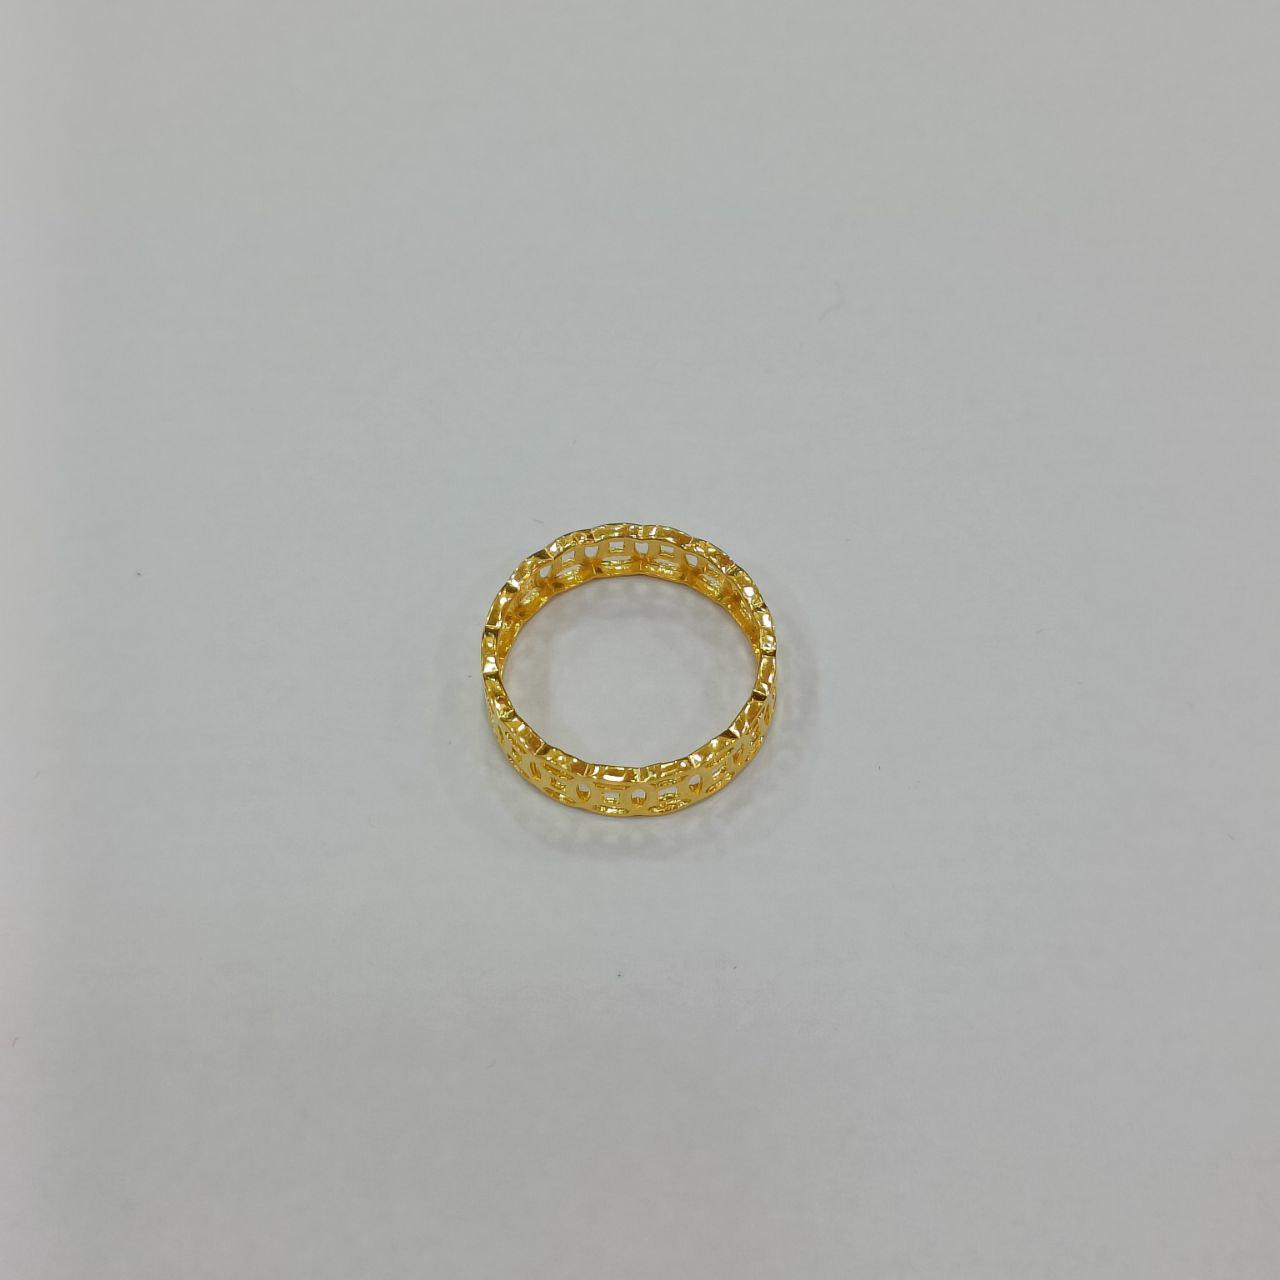 22k / 916 Gold Coin Ring v2-916 gold-Best Gold Shop